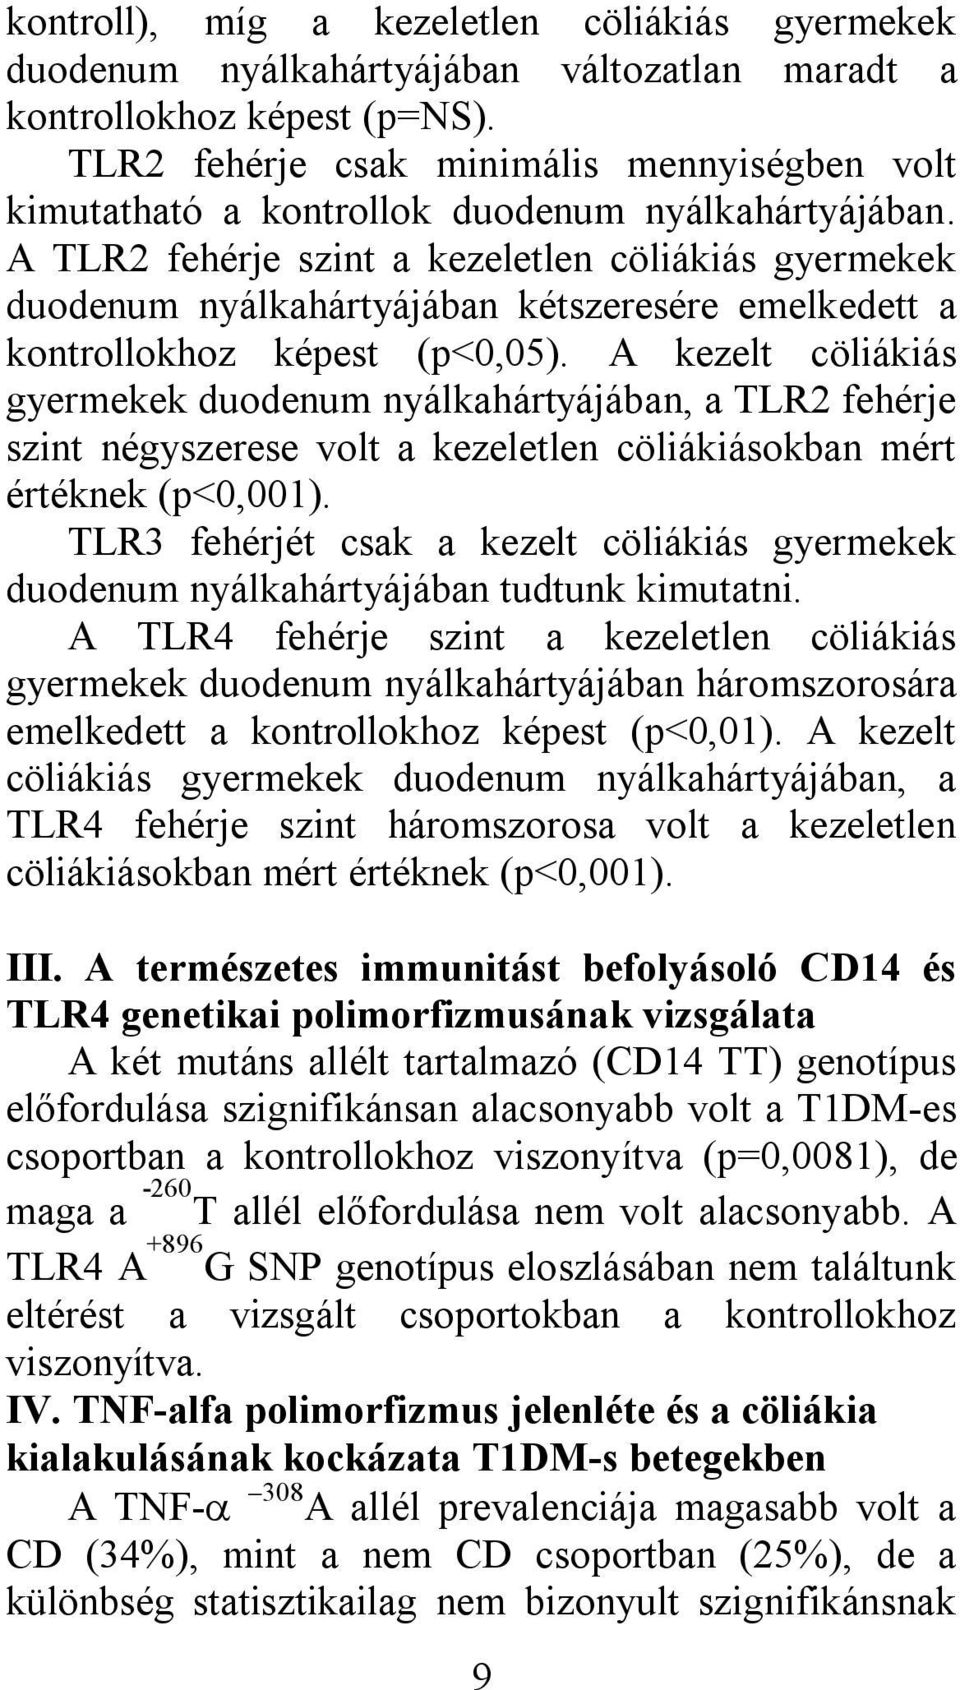 A TLR2 fehérje szint a kezeletlen cöliákiás gyermekek duodenum nyálkahártyájában kétszeresére emelkedett a kontrollokhoz képest (p<0,05).